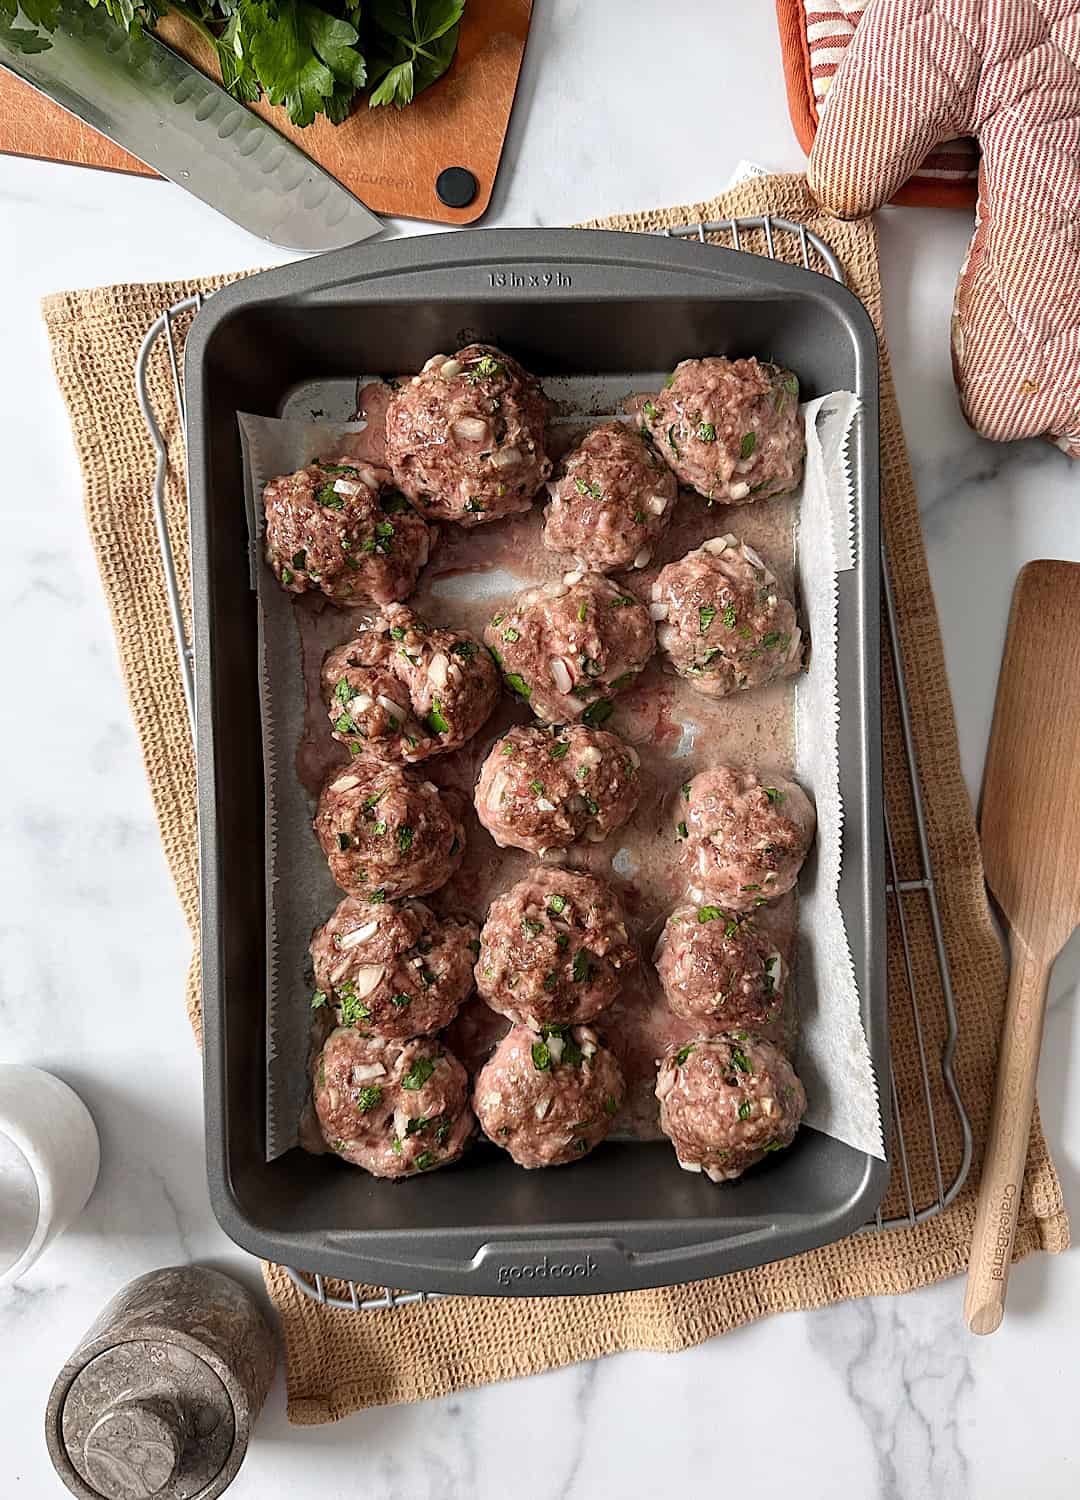 Baked Italian Style Meatballs on Baking Tray